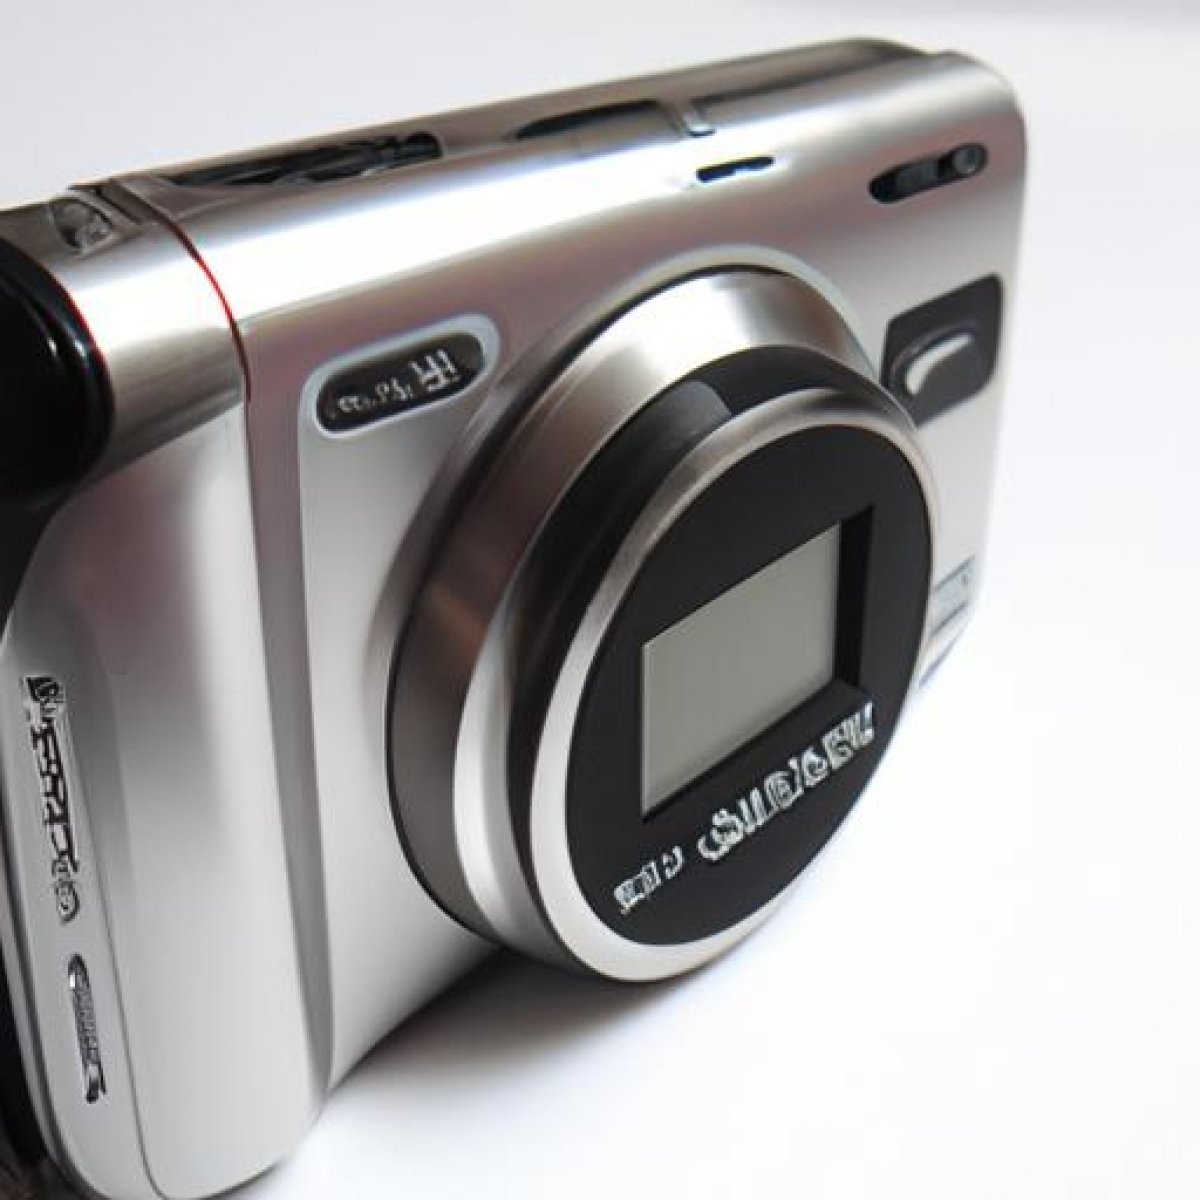 Sony cyber-shot dsc-w810 digital camera